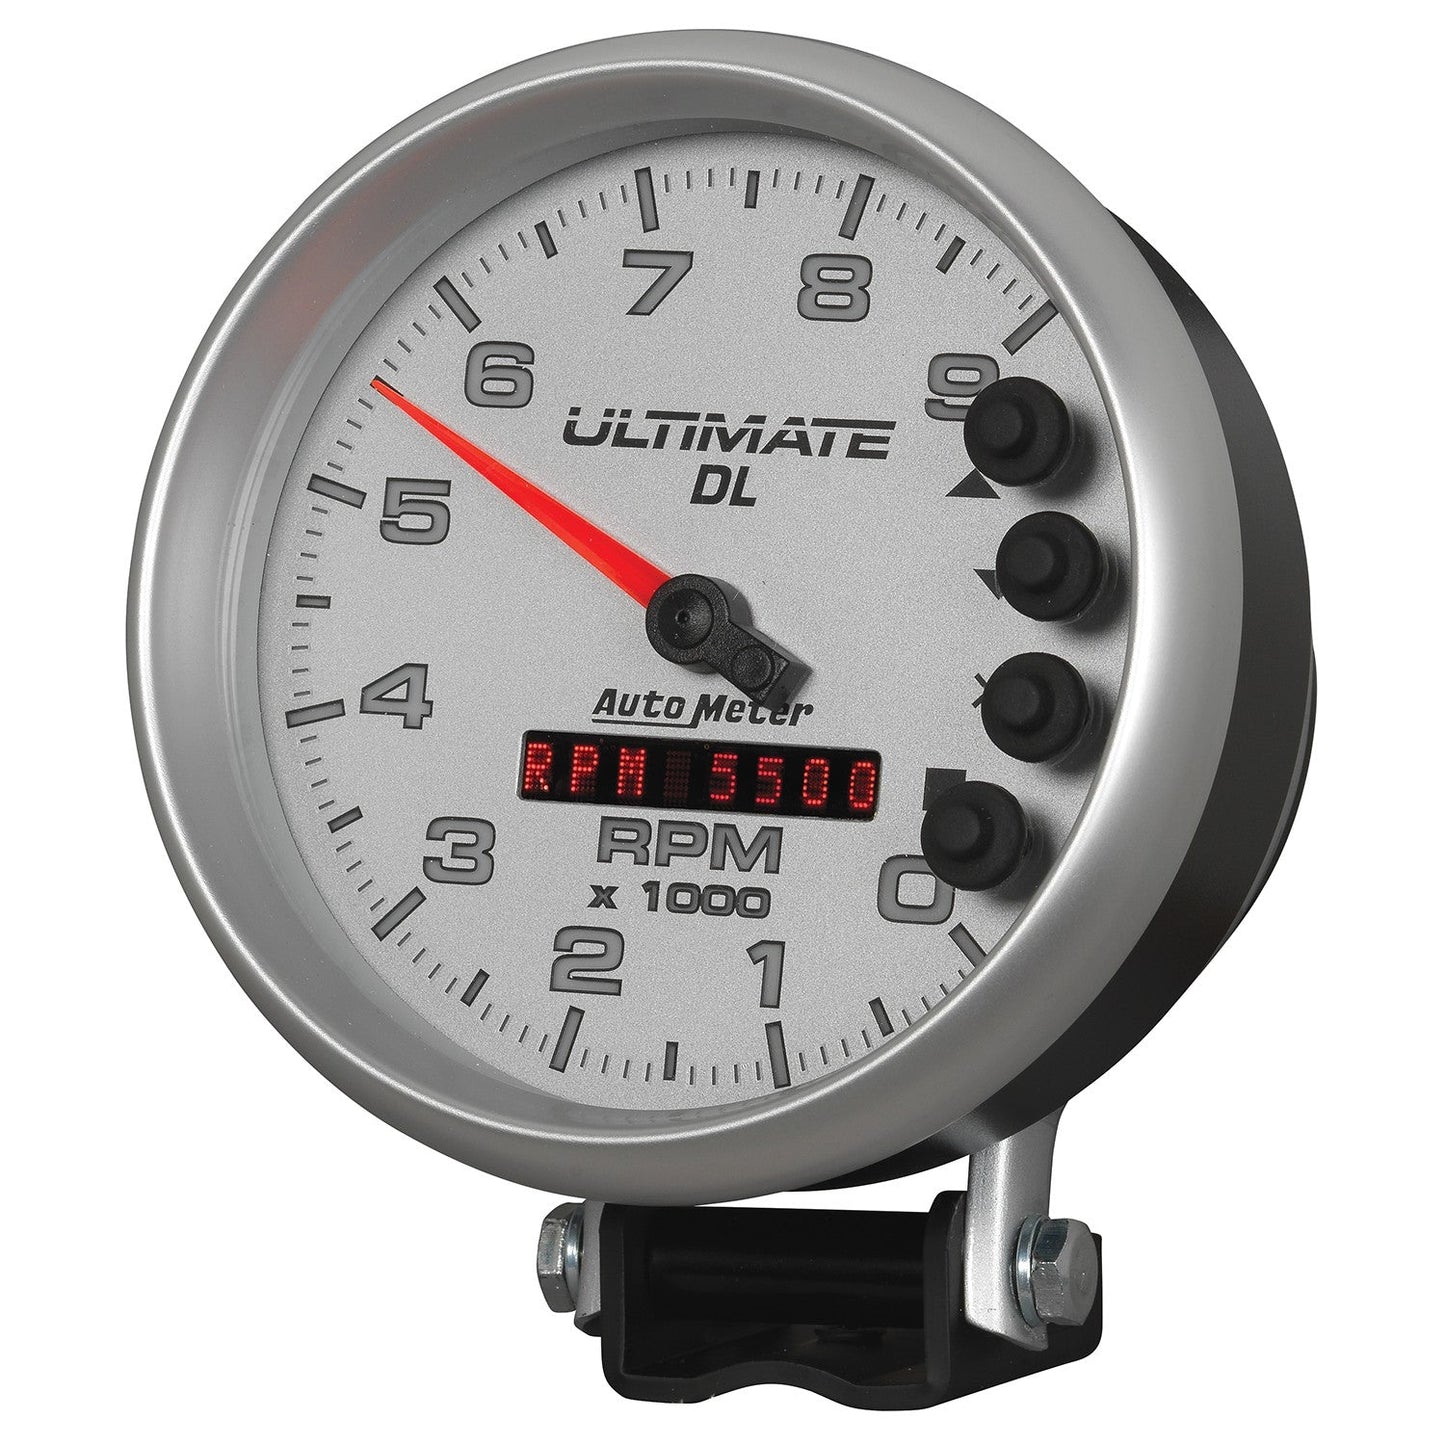 AutoMeter - TACÓMETRO DE 5", 0-9000 RPM, PEDESTAL, REPRODUCCIÓN ULTIMATE DL, PLATA (6894)